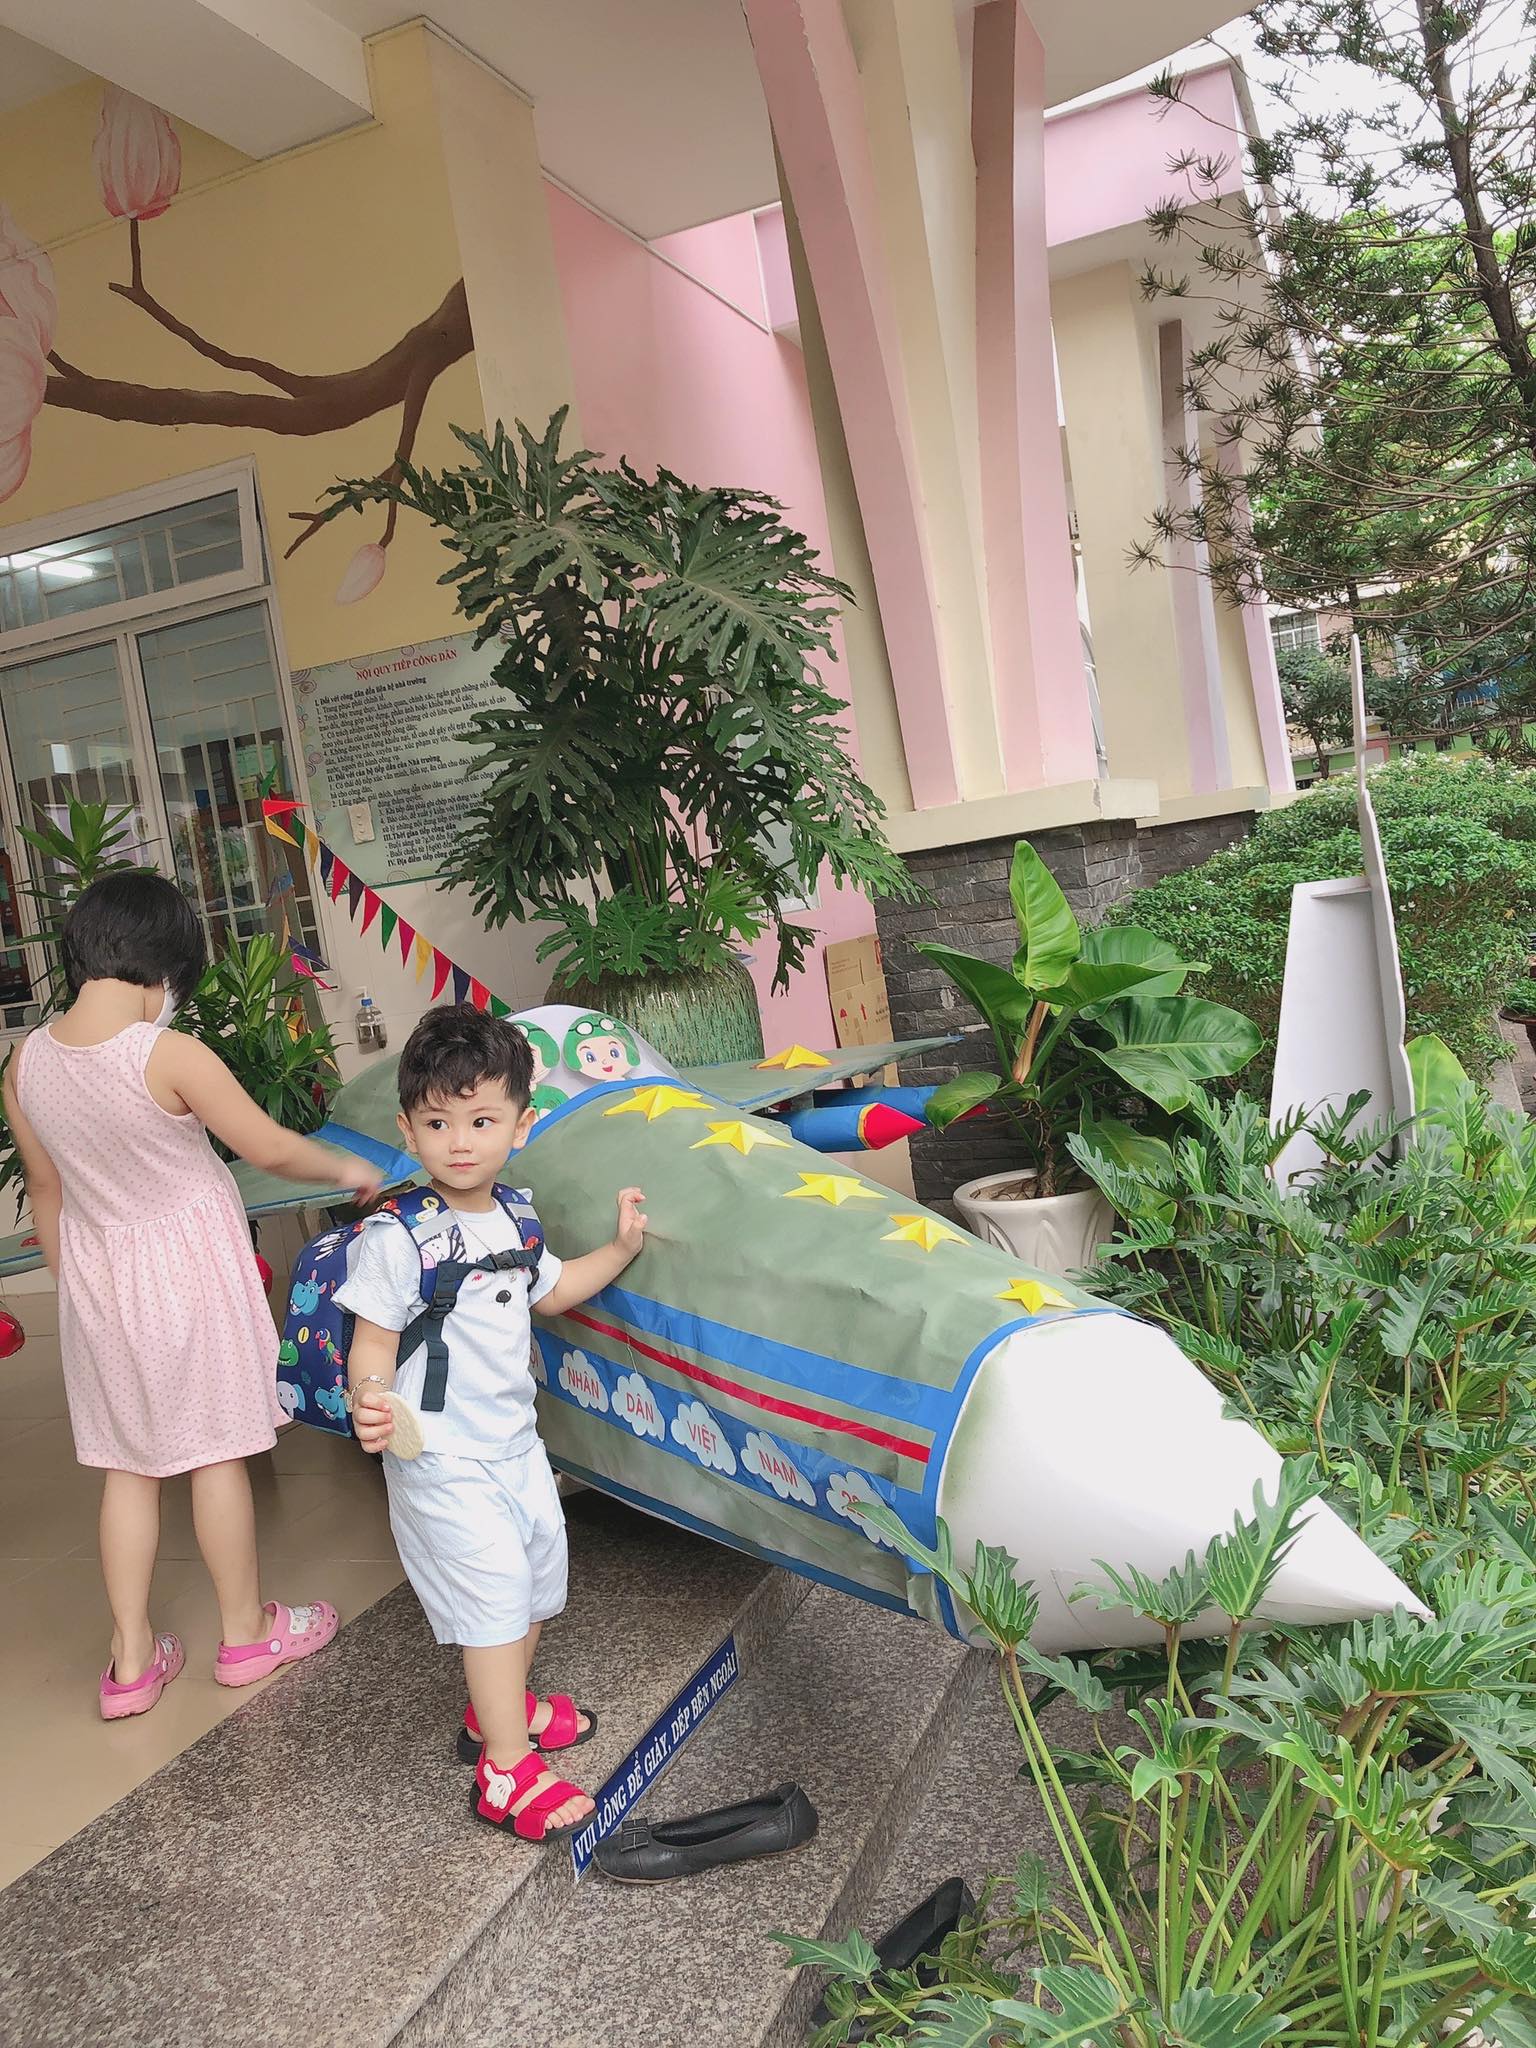 Mẹ Sài Gòn review trường mầm non ai nghe cũng mê: Trường có vườn rau, hồ cá, bé được học nhiều kỹ năng nhưng học phí thì dưới 2 triệu đồng - Ảnh 13.